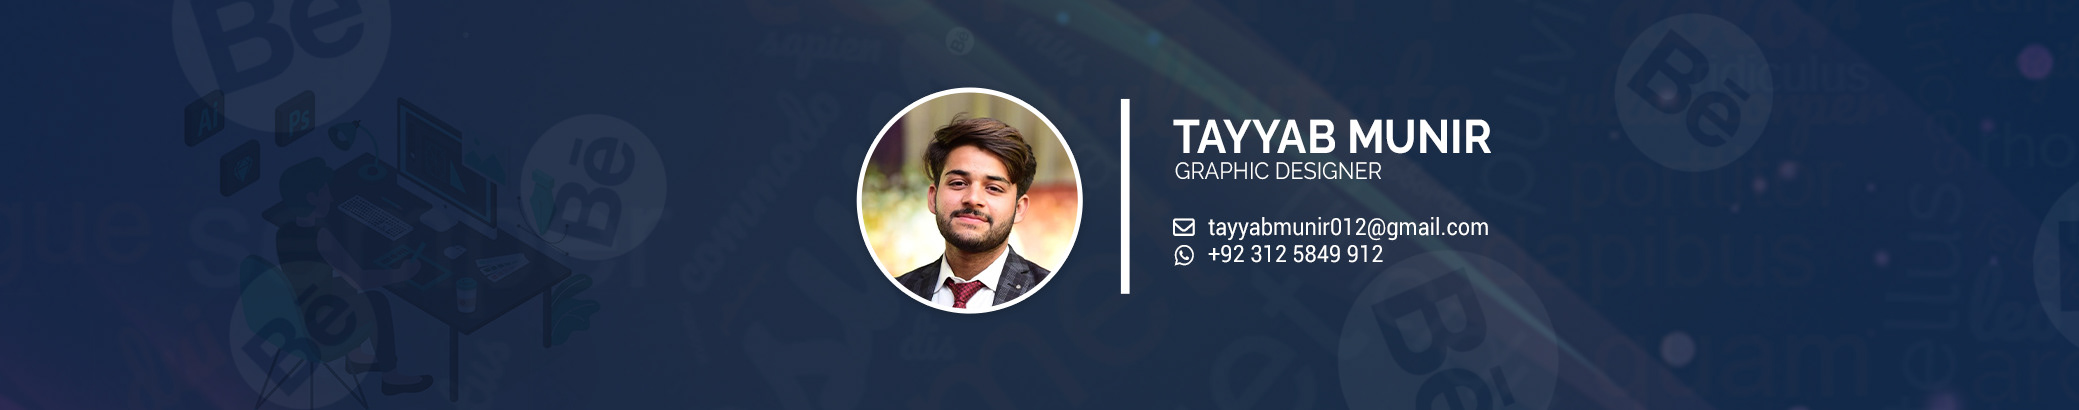 Tayyab Munir のプロファイルバナー